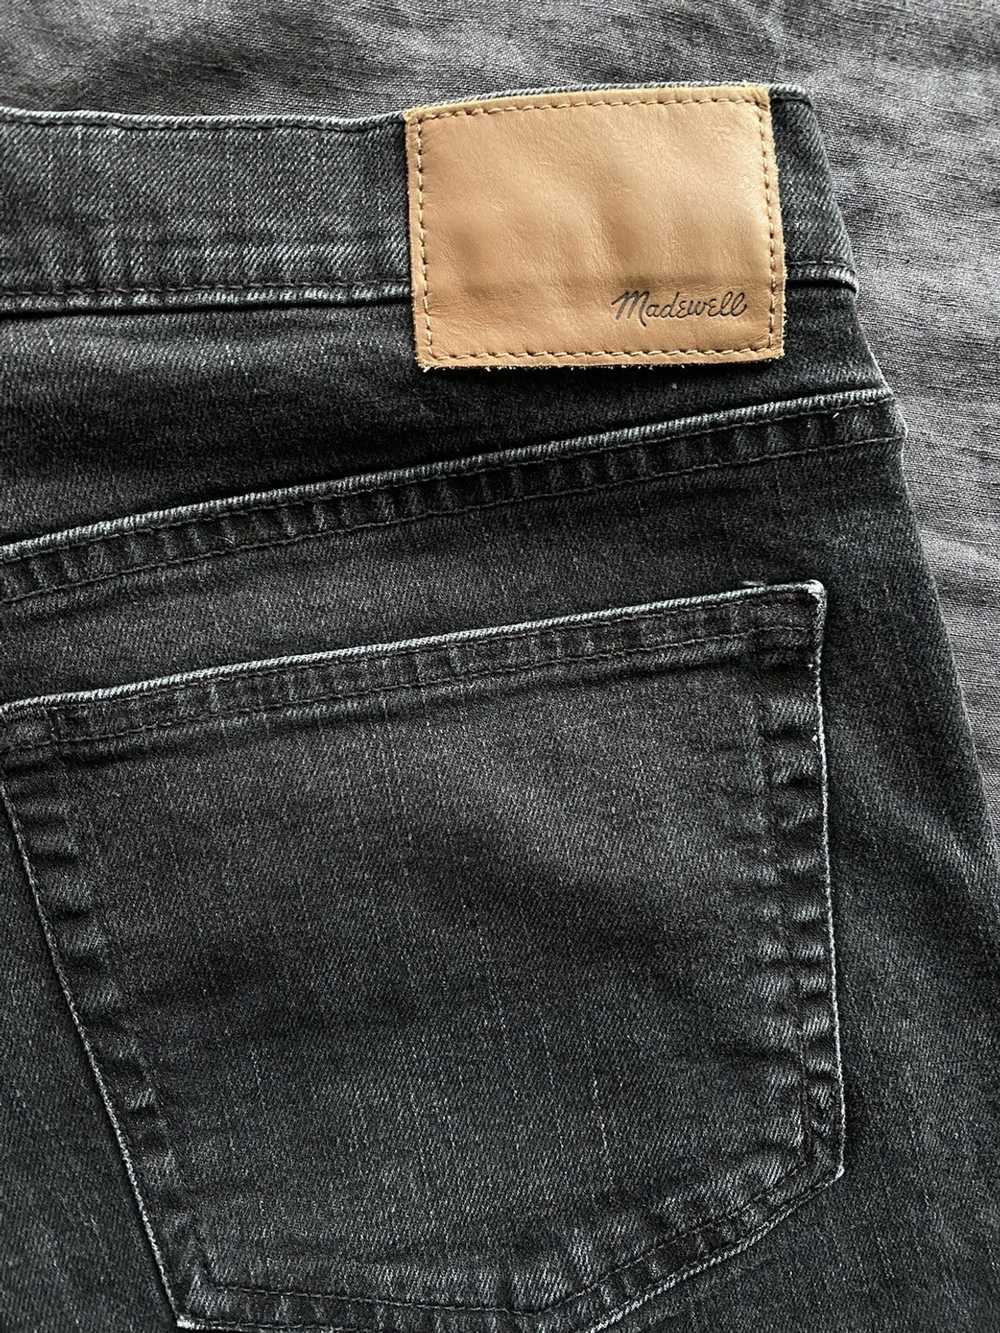 Madewell Black Slim Jeans - 35x32 - image 5